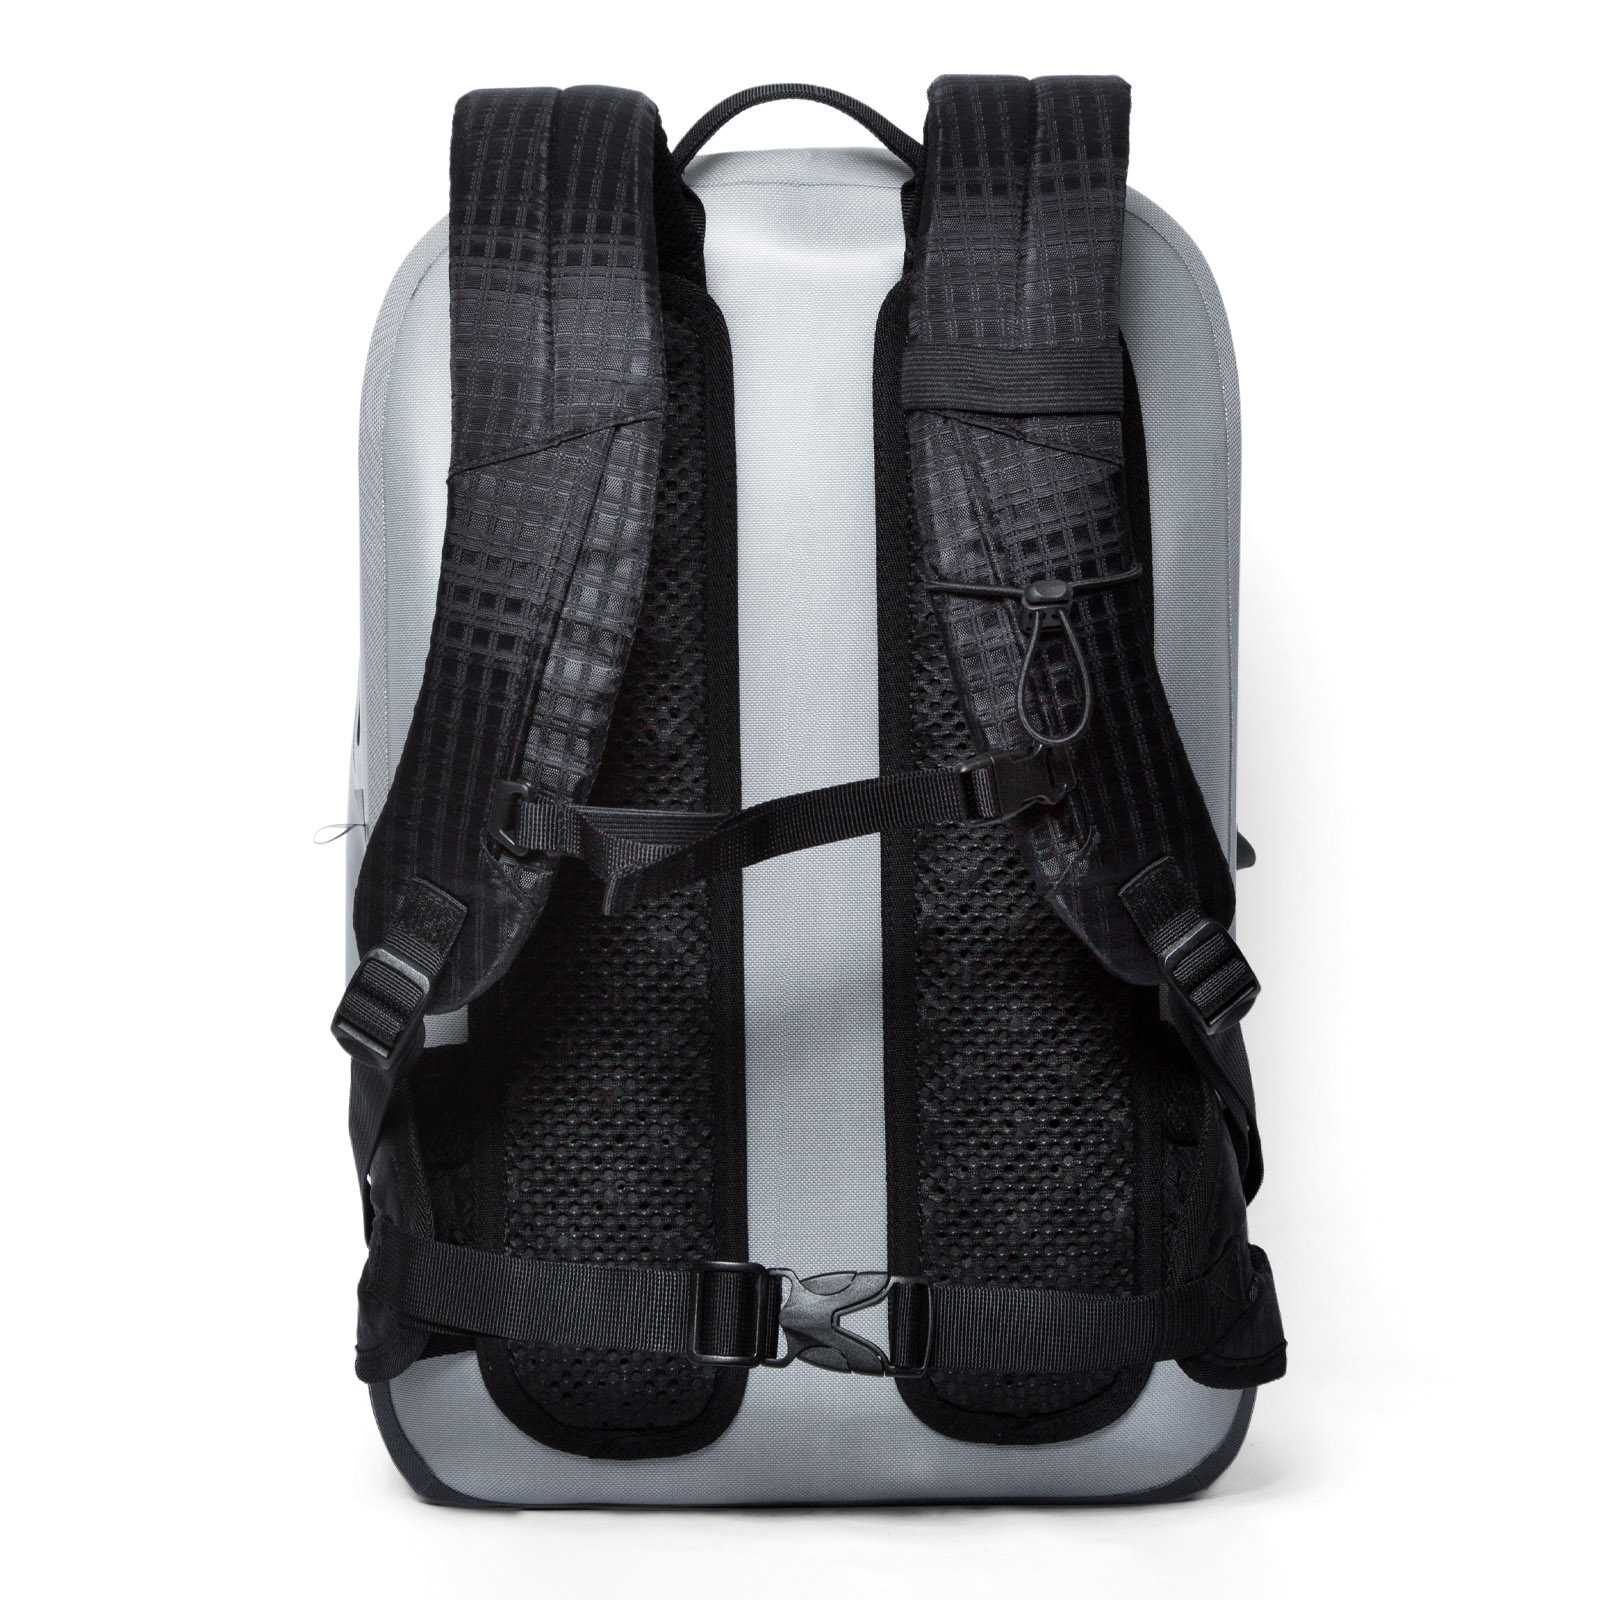 Xelfly - Swagfly Waterproof Backpack